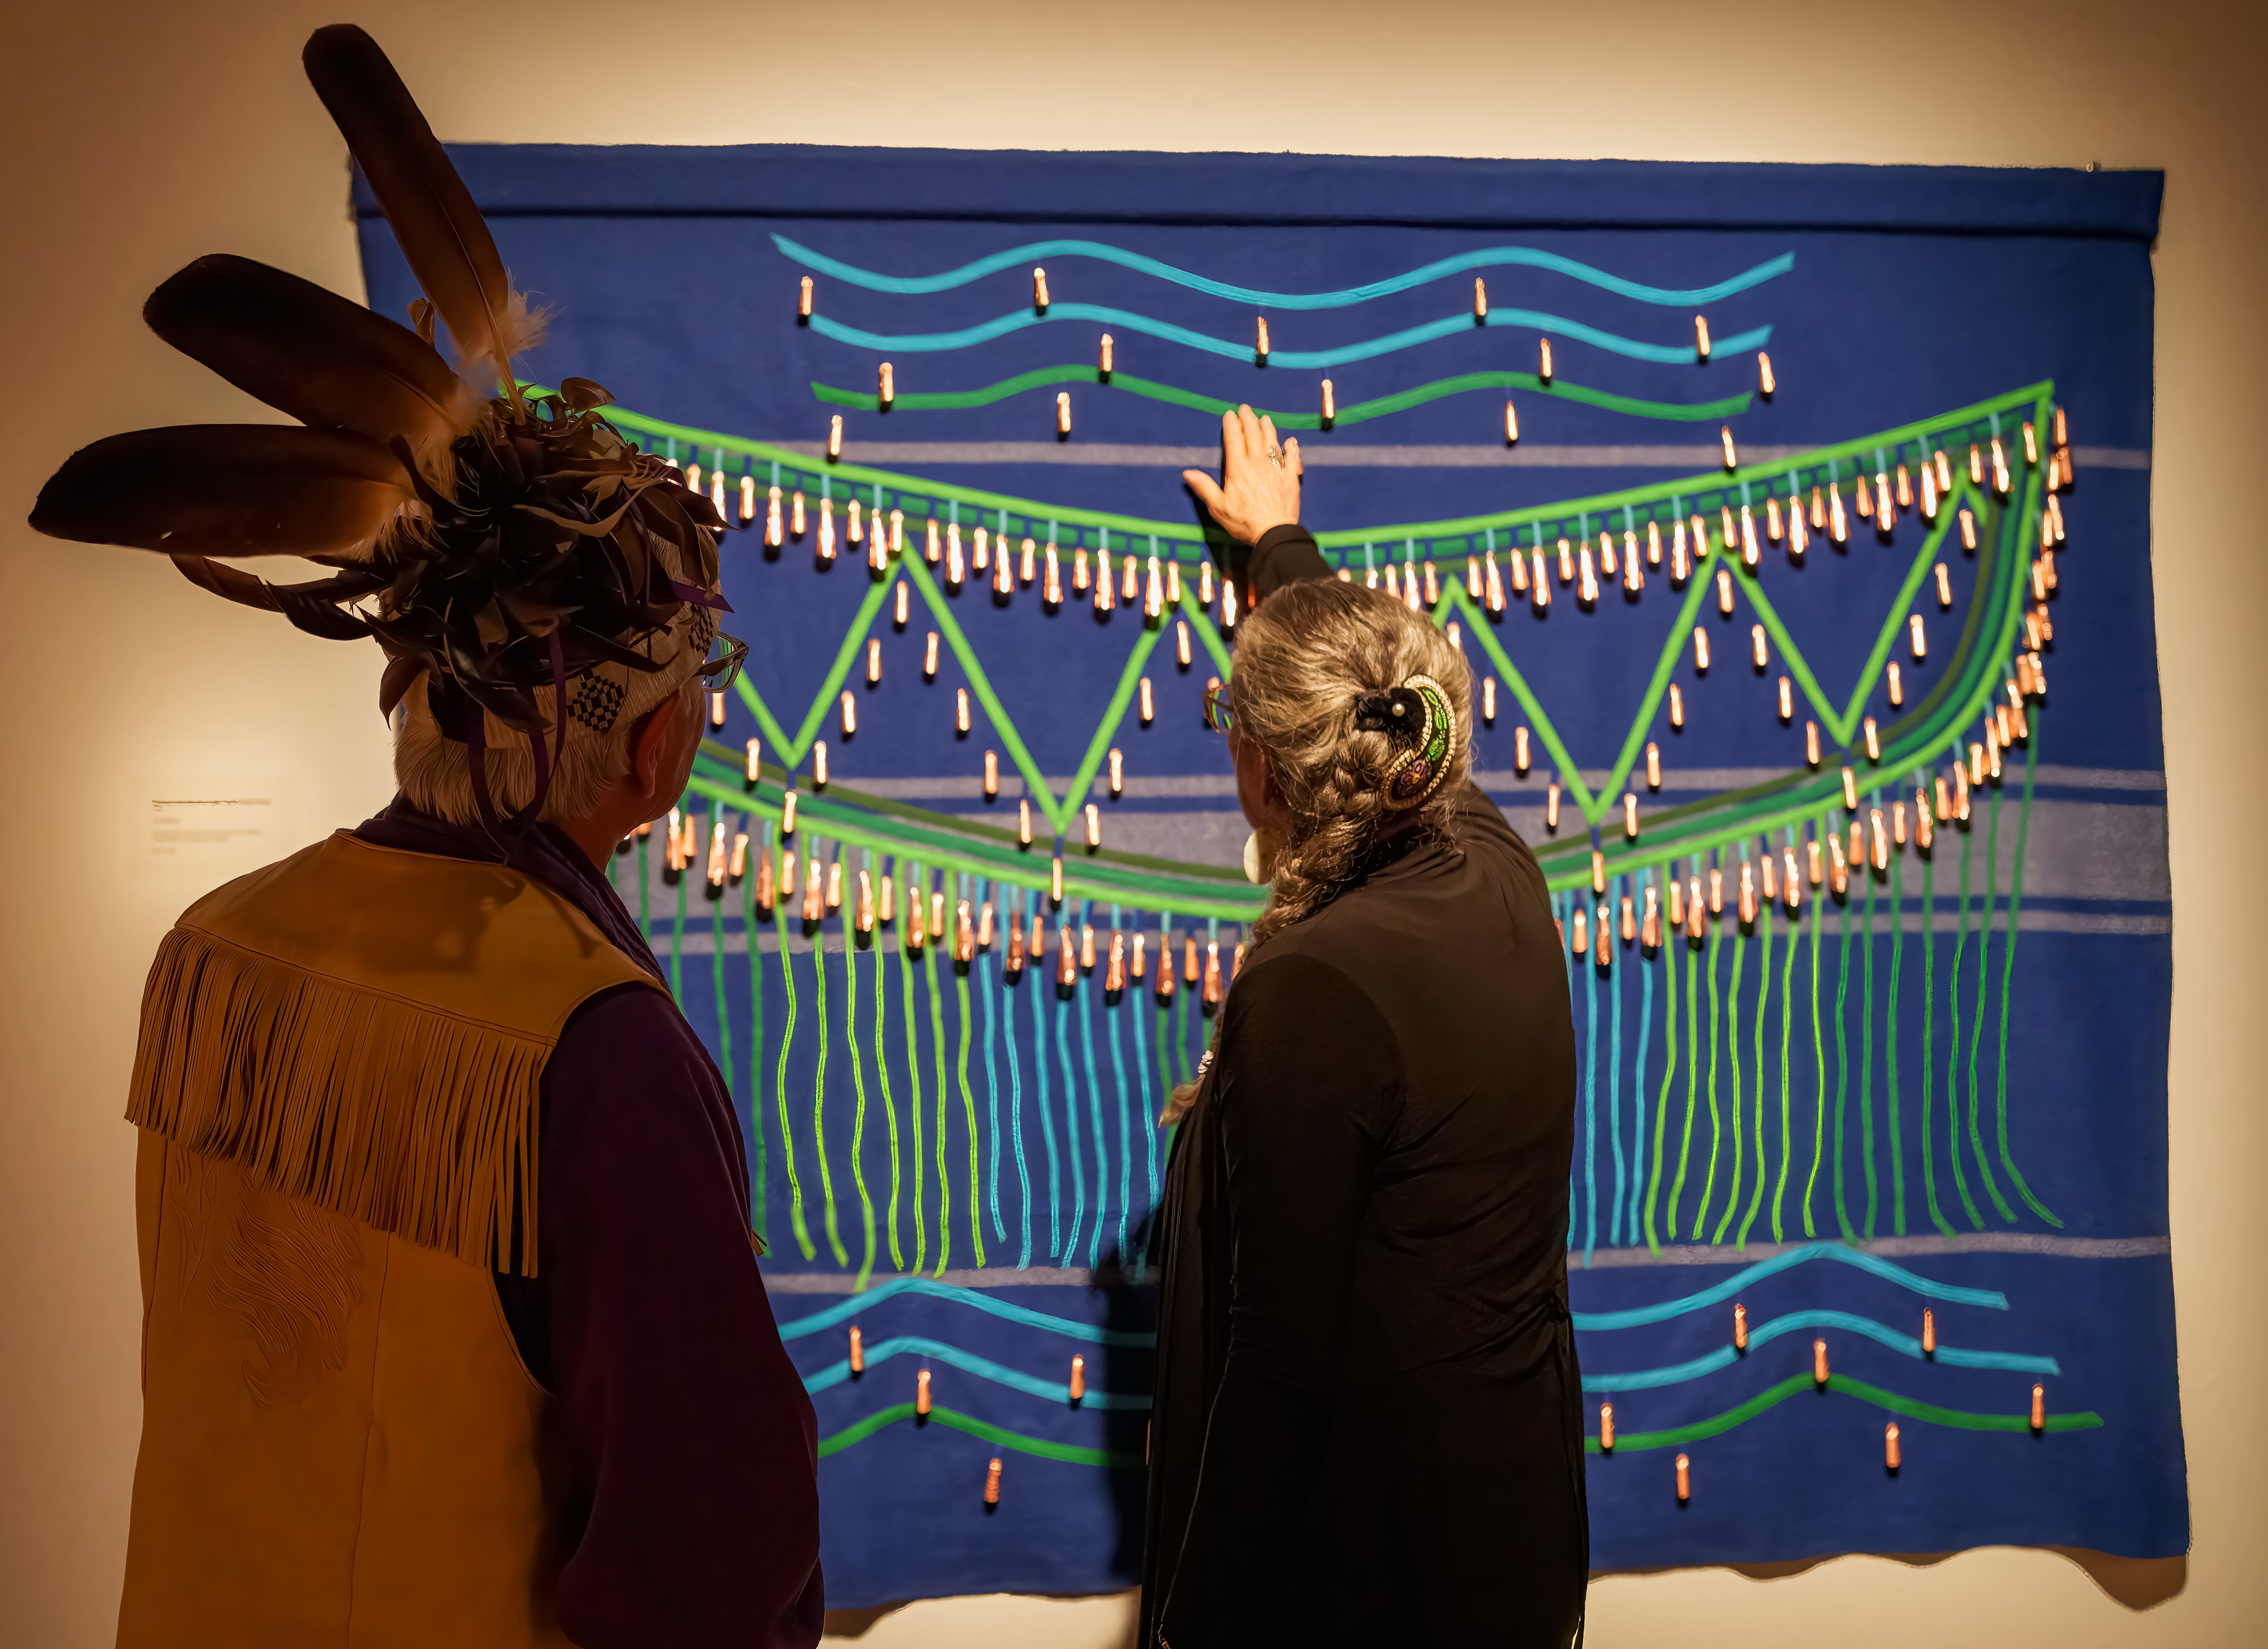 Mother-daughter art exhibit: Weaving broken bonds